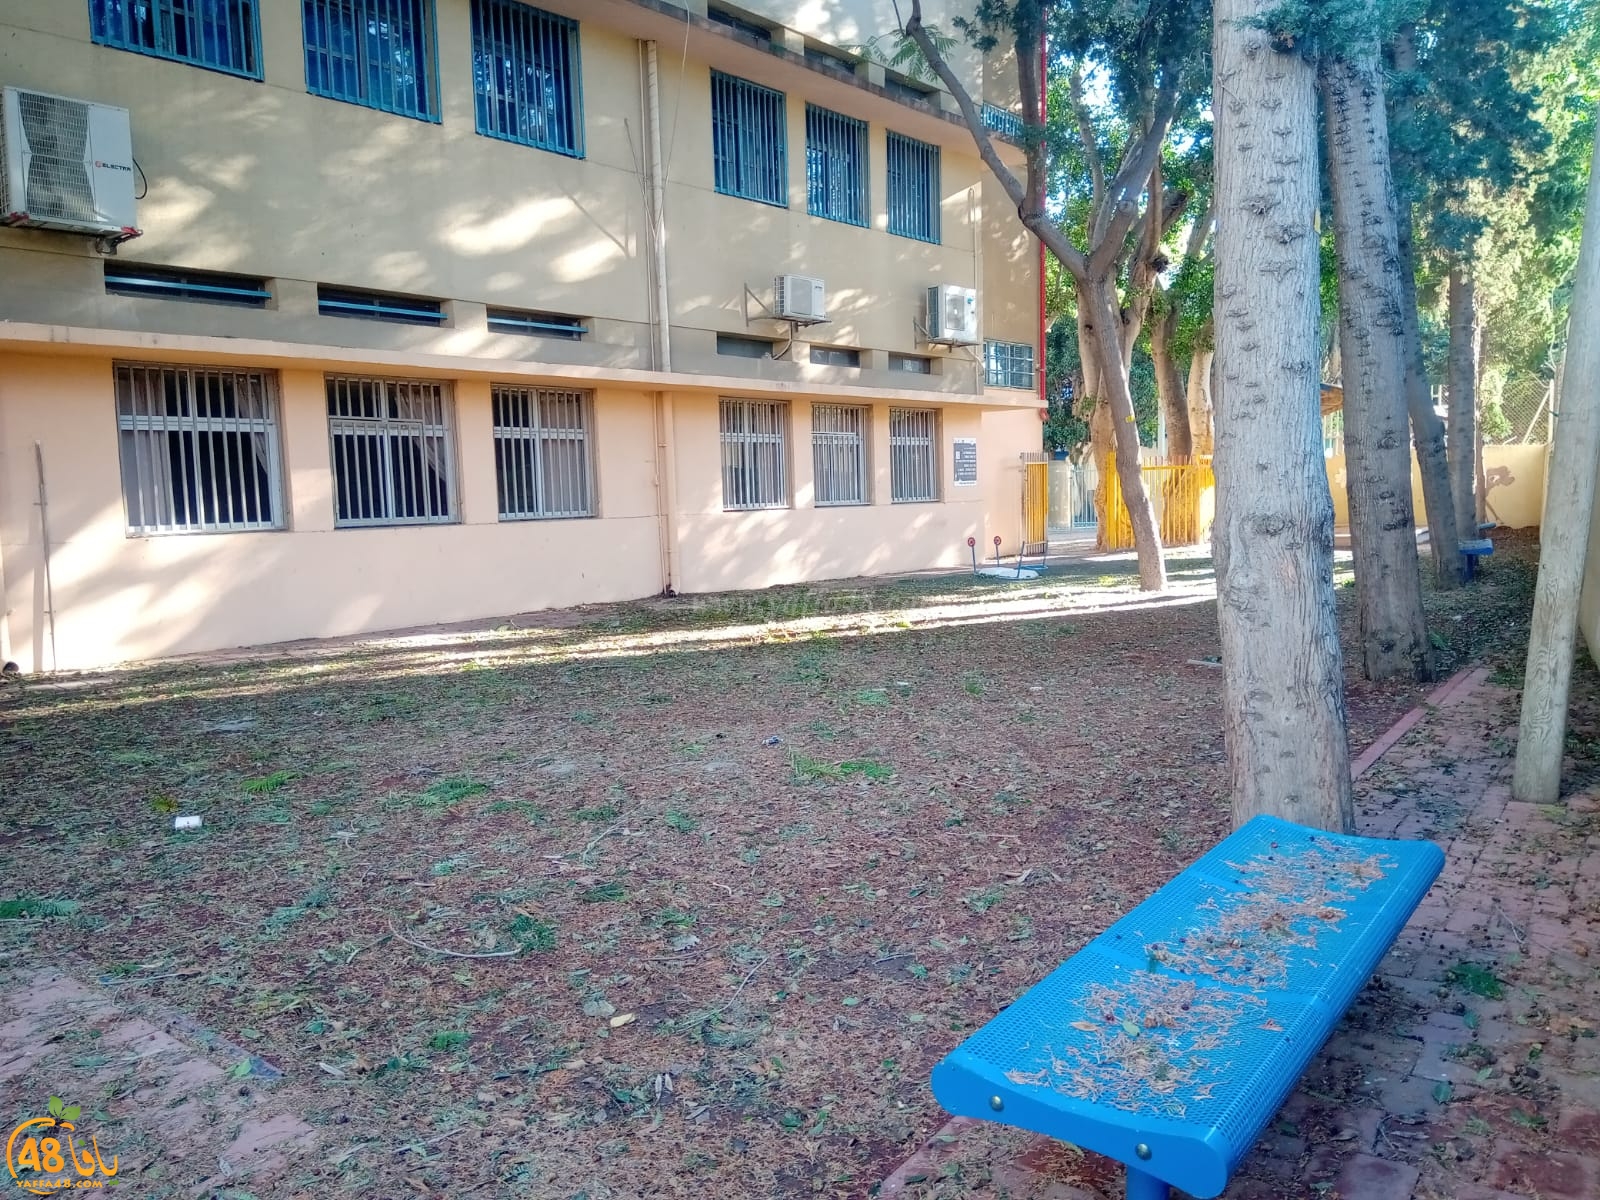  فيديو: كيف يُعقل أن تُغلق مدرسة الزهراء الابتدائية بيافا